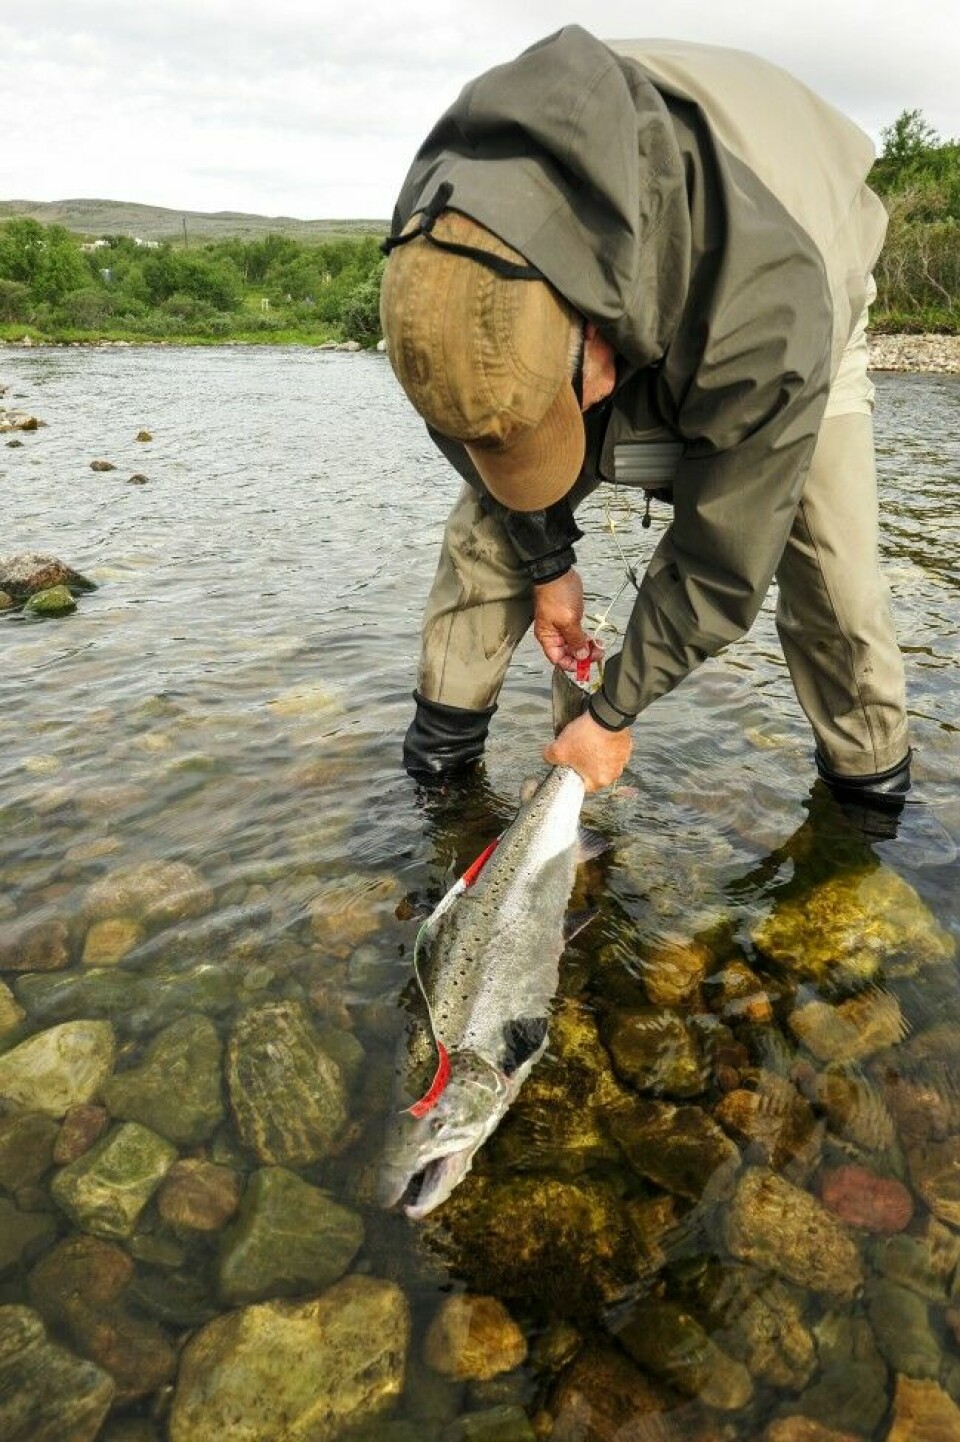 Gjenutsetting bidrar til at man oppnår gytebestandsmålet i den enkelte elv. Denne ble målt til 80 cm og fikk friheten tilbake i Kongsfjordelva i Øst-Finnmark.